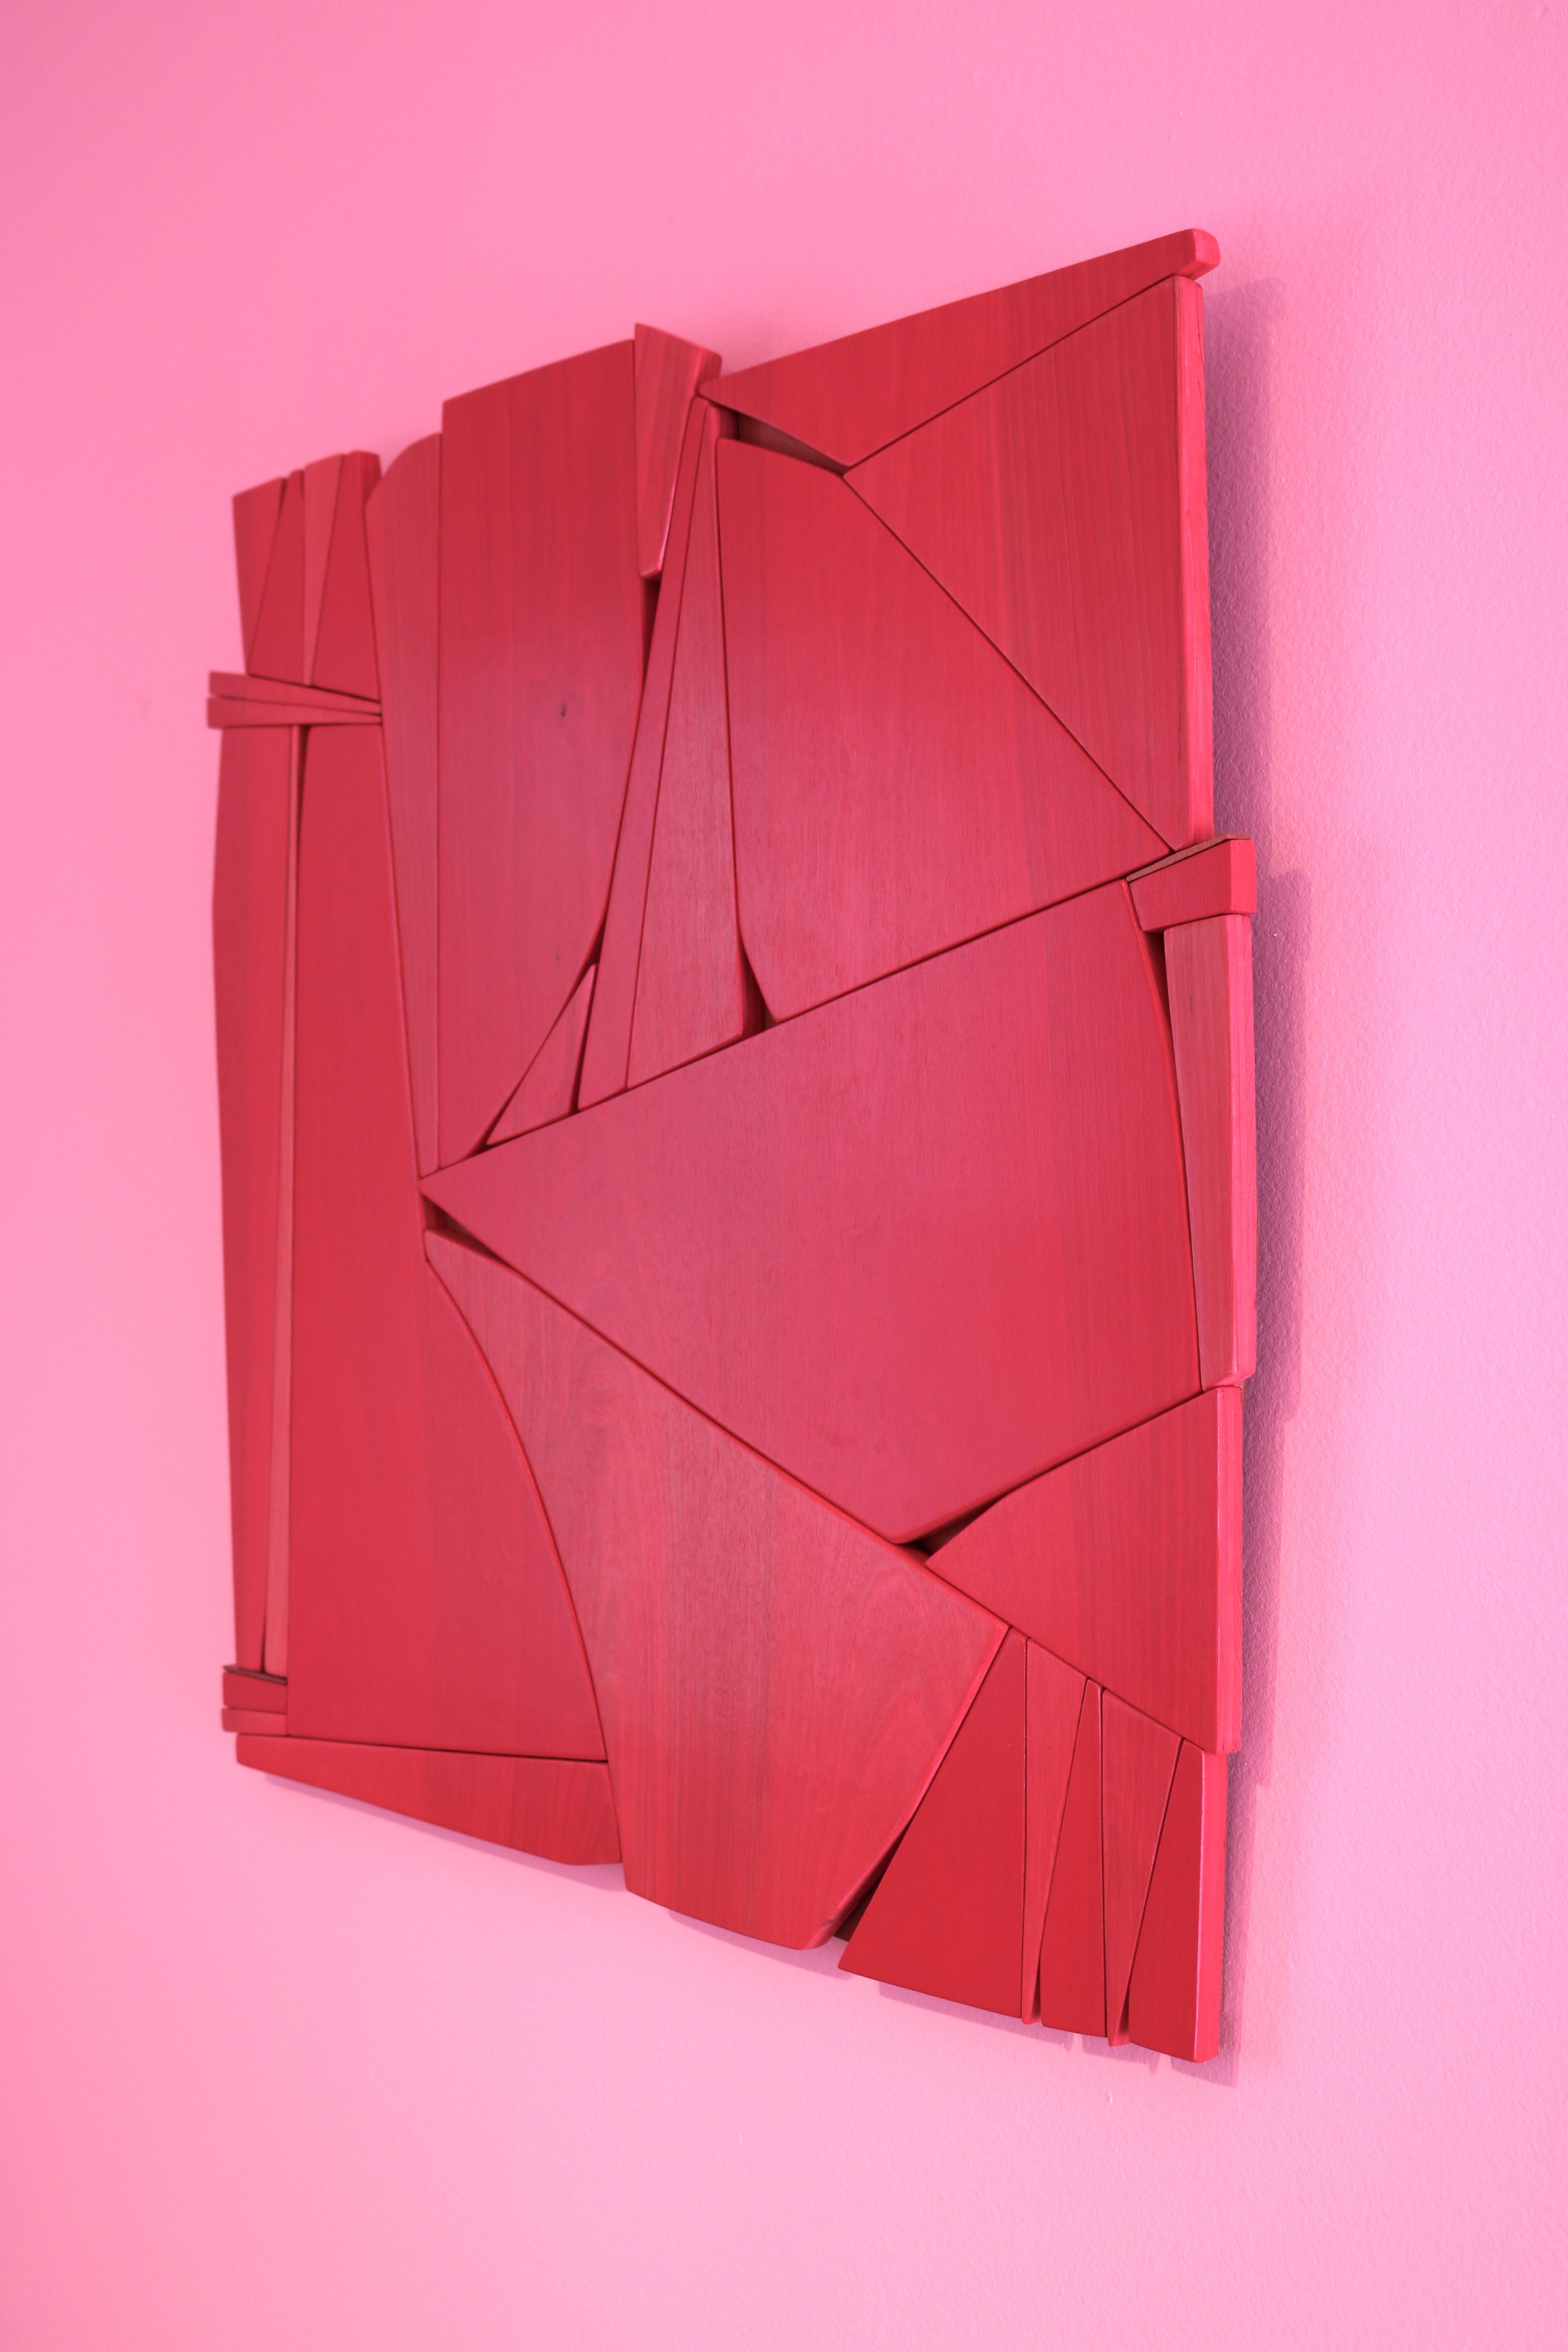 Lippenstiftrote (moderne abstrakte Wandskulptur im minimalistischen geometrischen Design aus rotem Holz) (Rot), Abstract Sculpture, von Scott Troxel